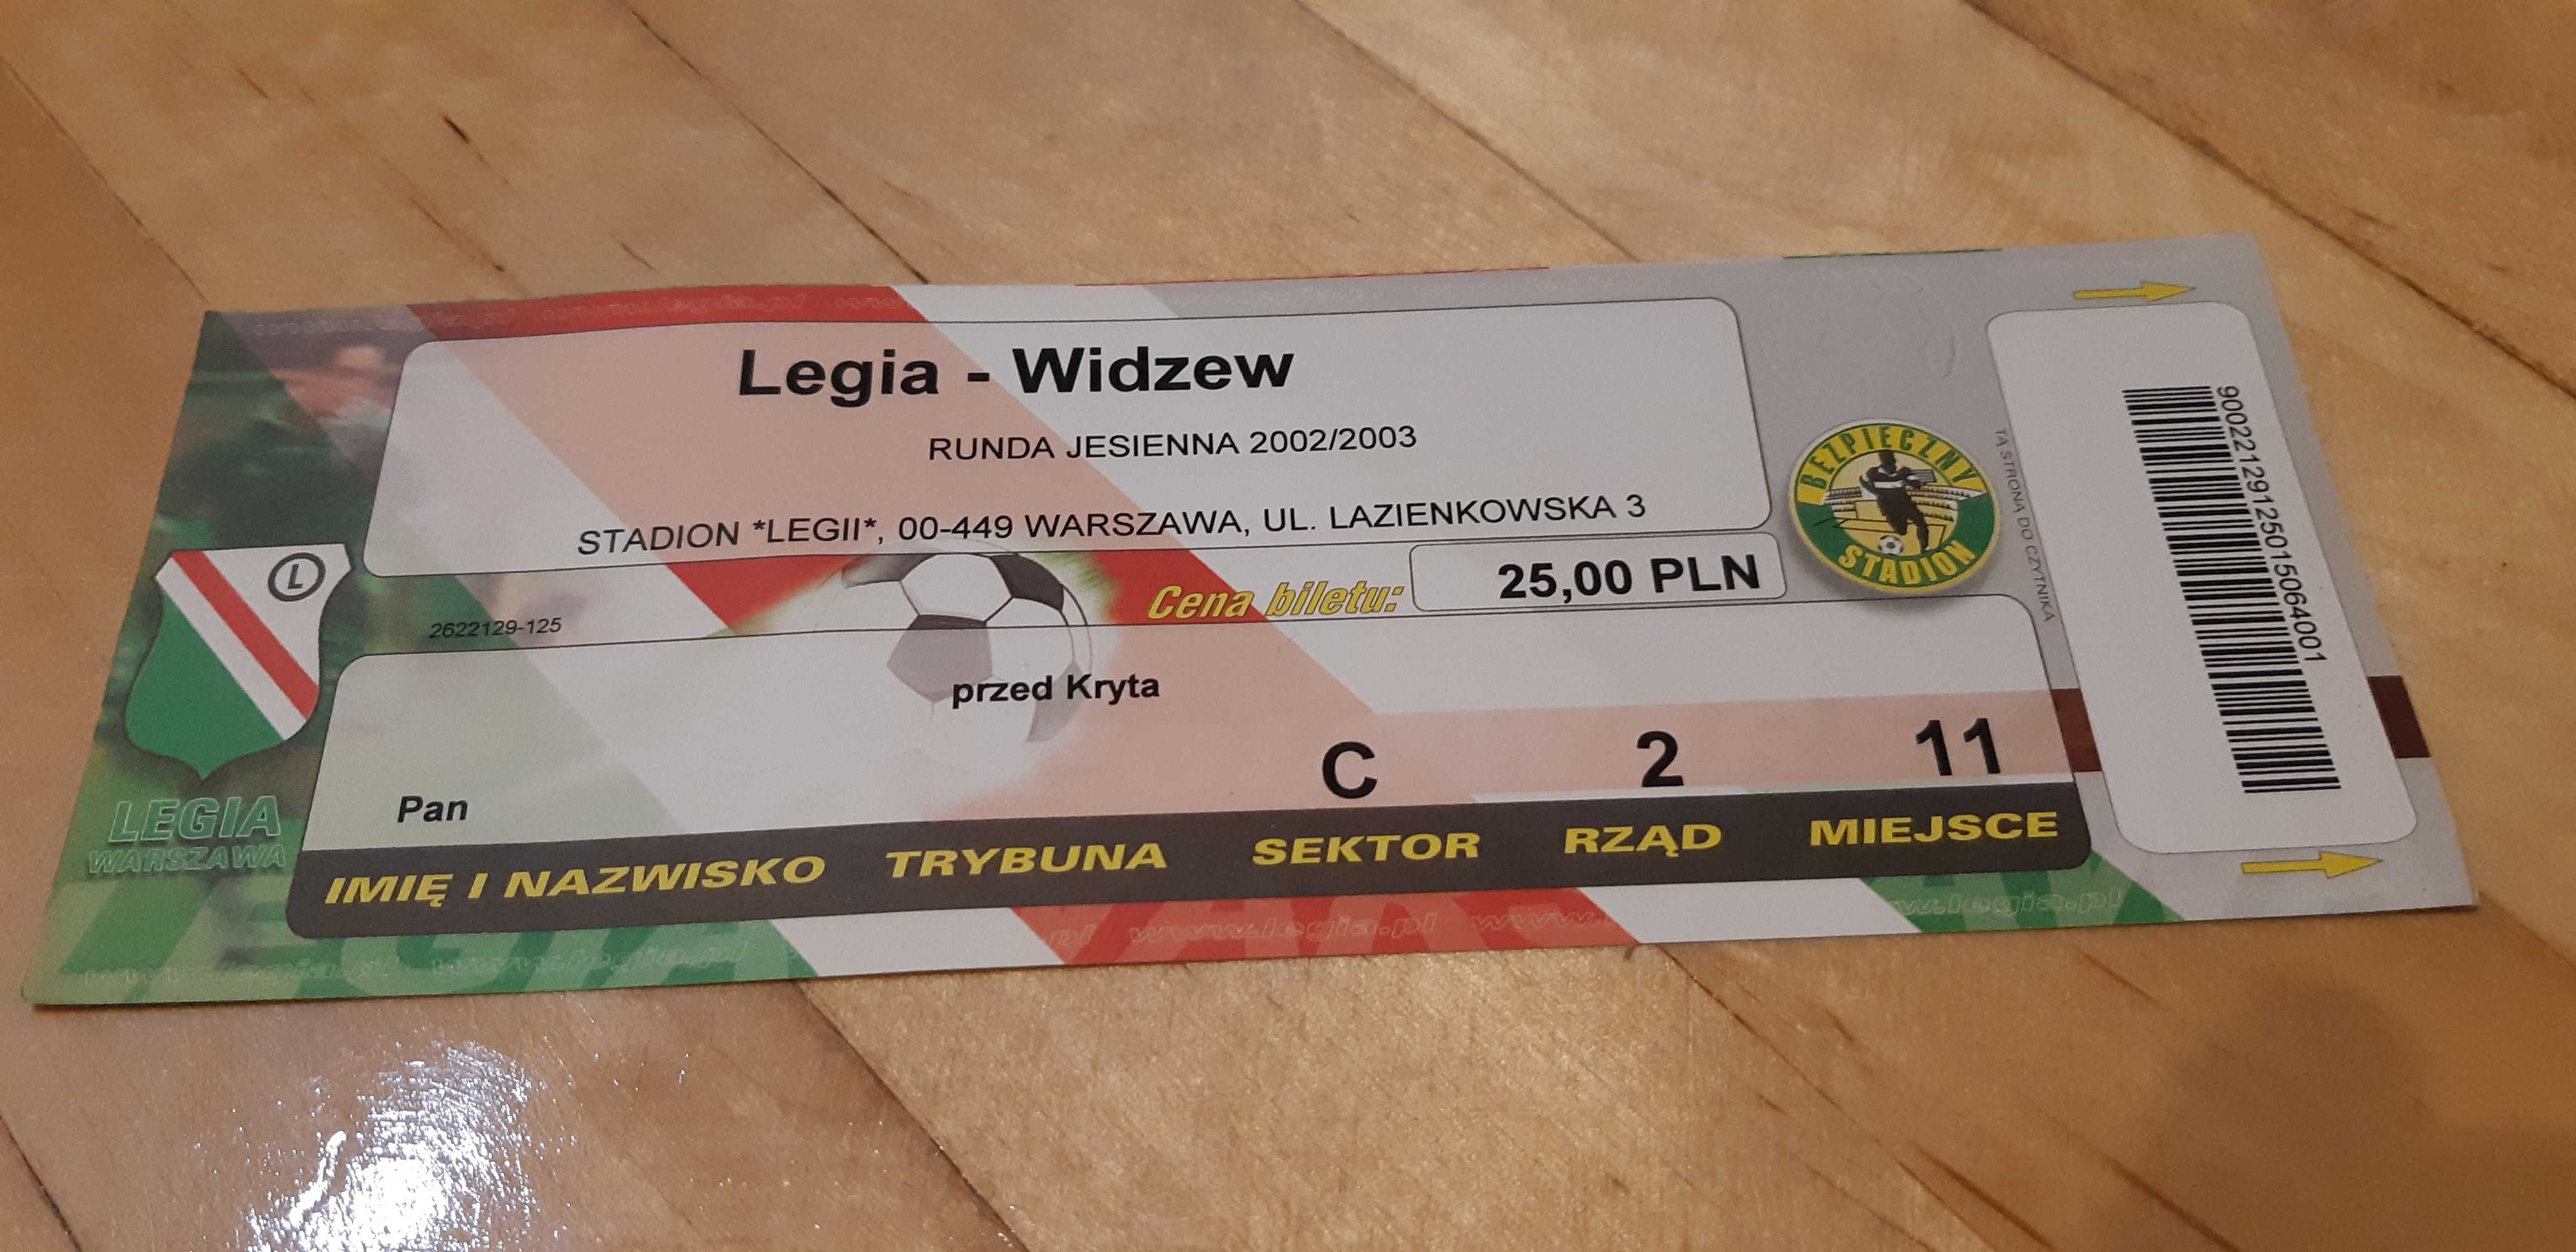 bilet Legia -Widzew runda jesienna 2002/2003